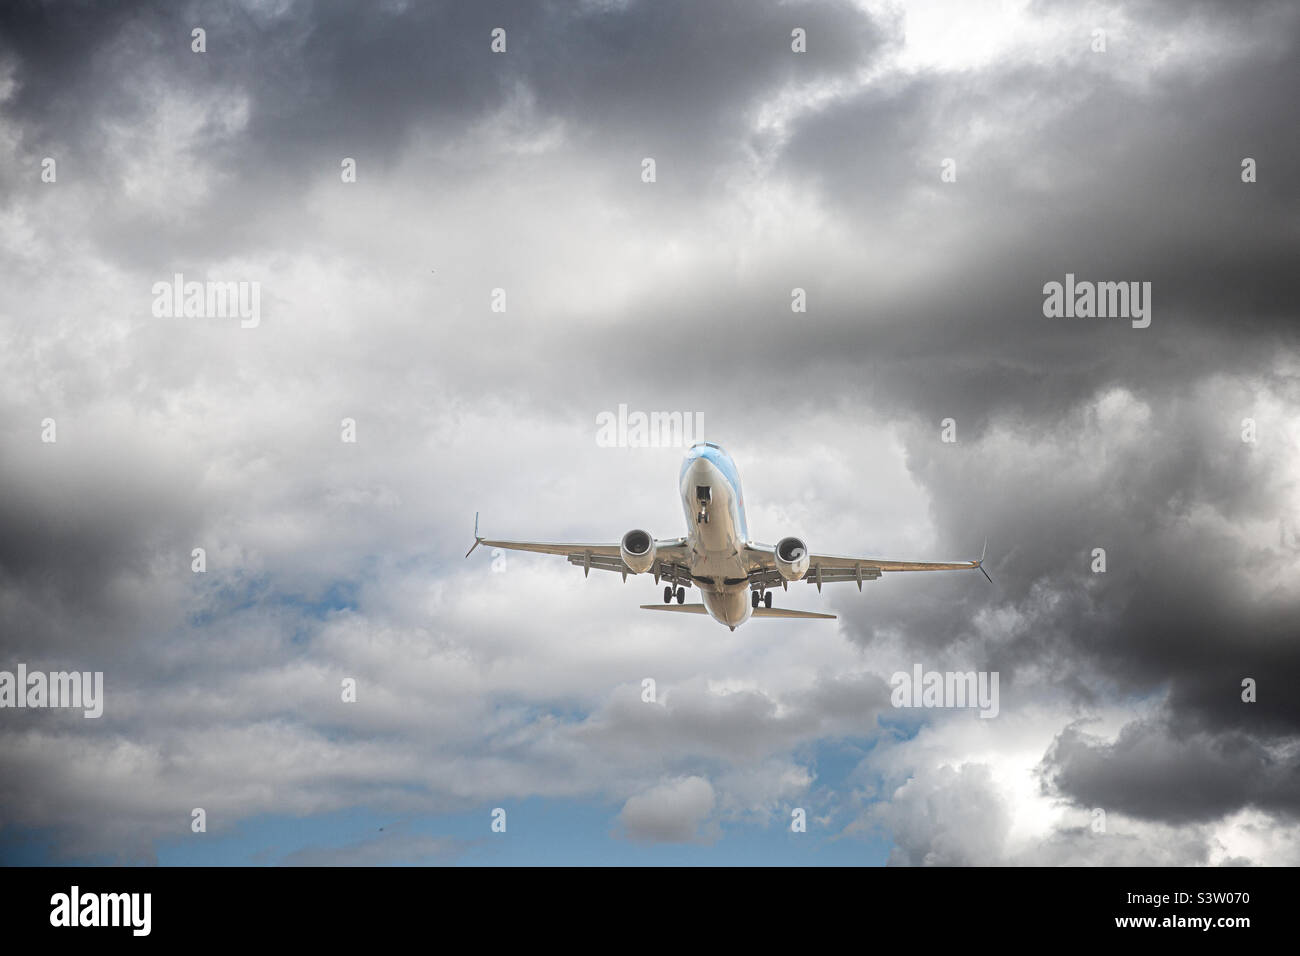 Un avion passager qui dégret ou atterrit et qui survole des turbulences avec des nuages sombres dans un concept de problèmes de voyage Banque D'Images